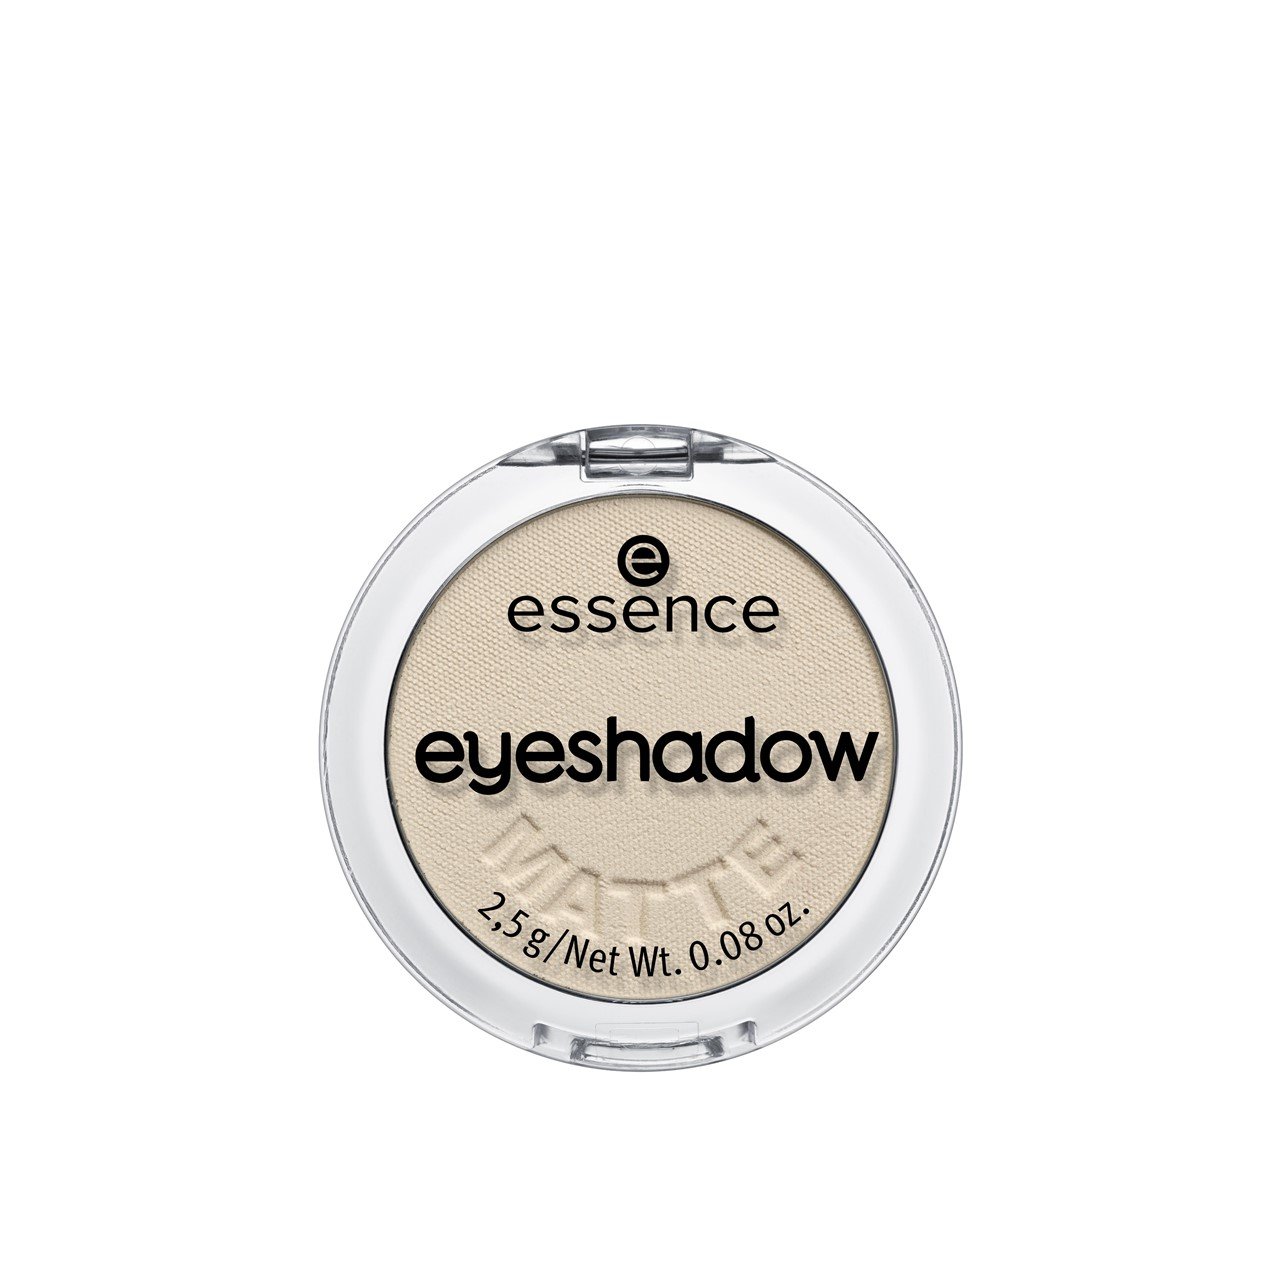 essence Eyeshadow 20 Cream 2.5g (0.09oz)